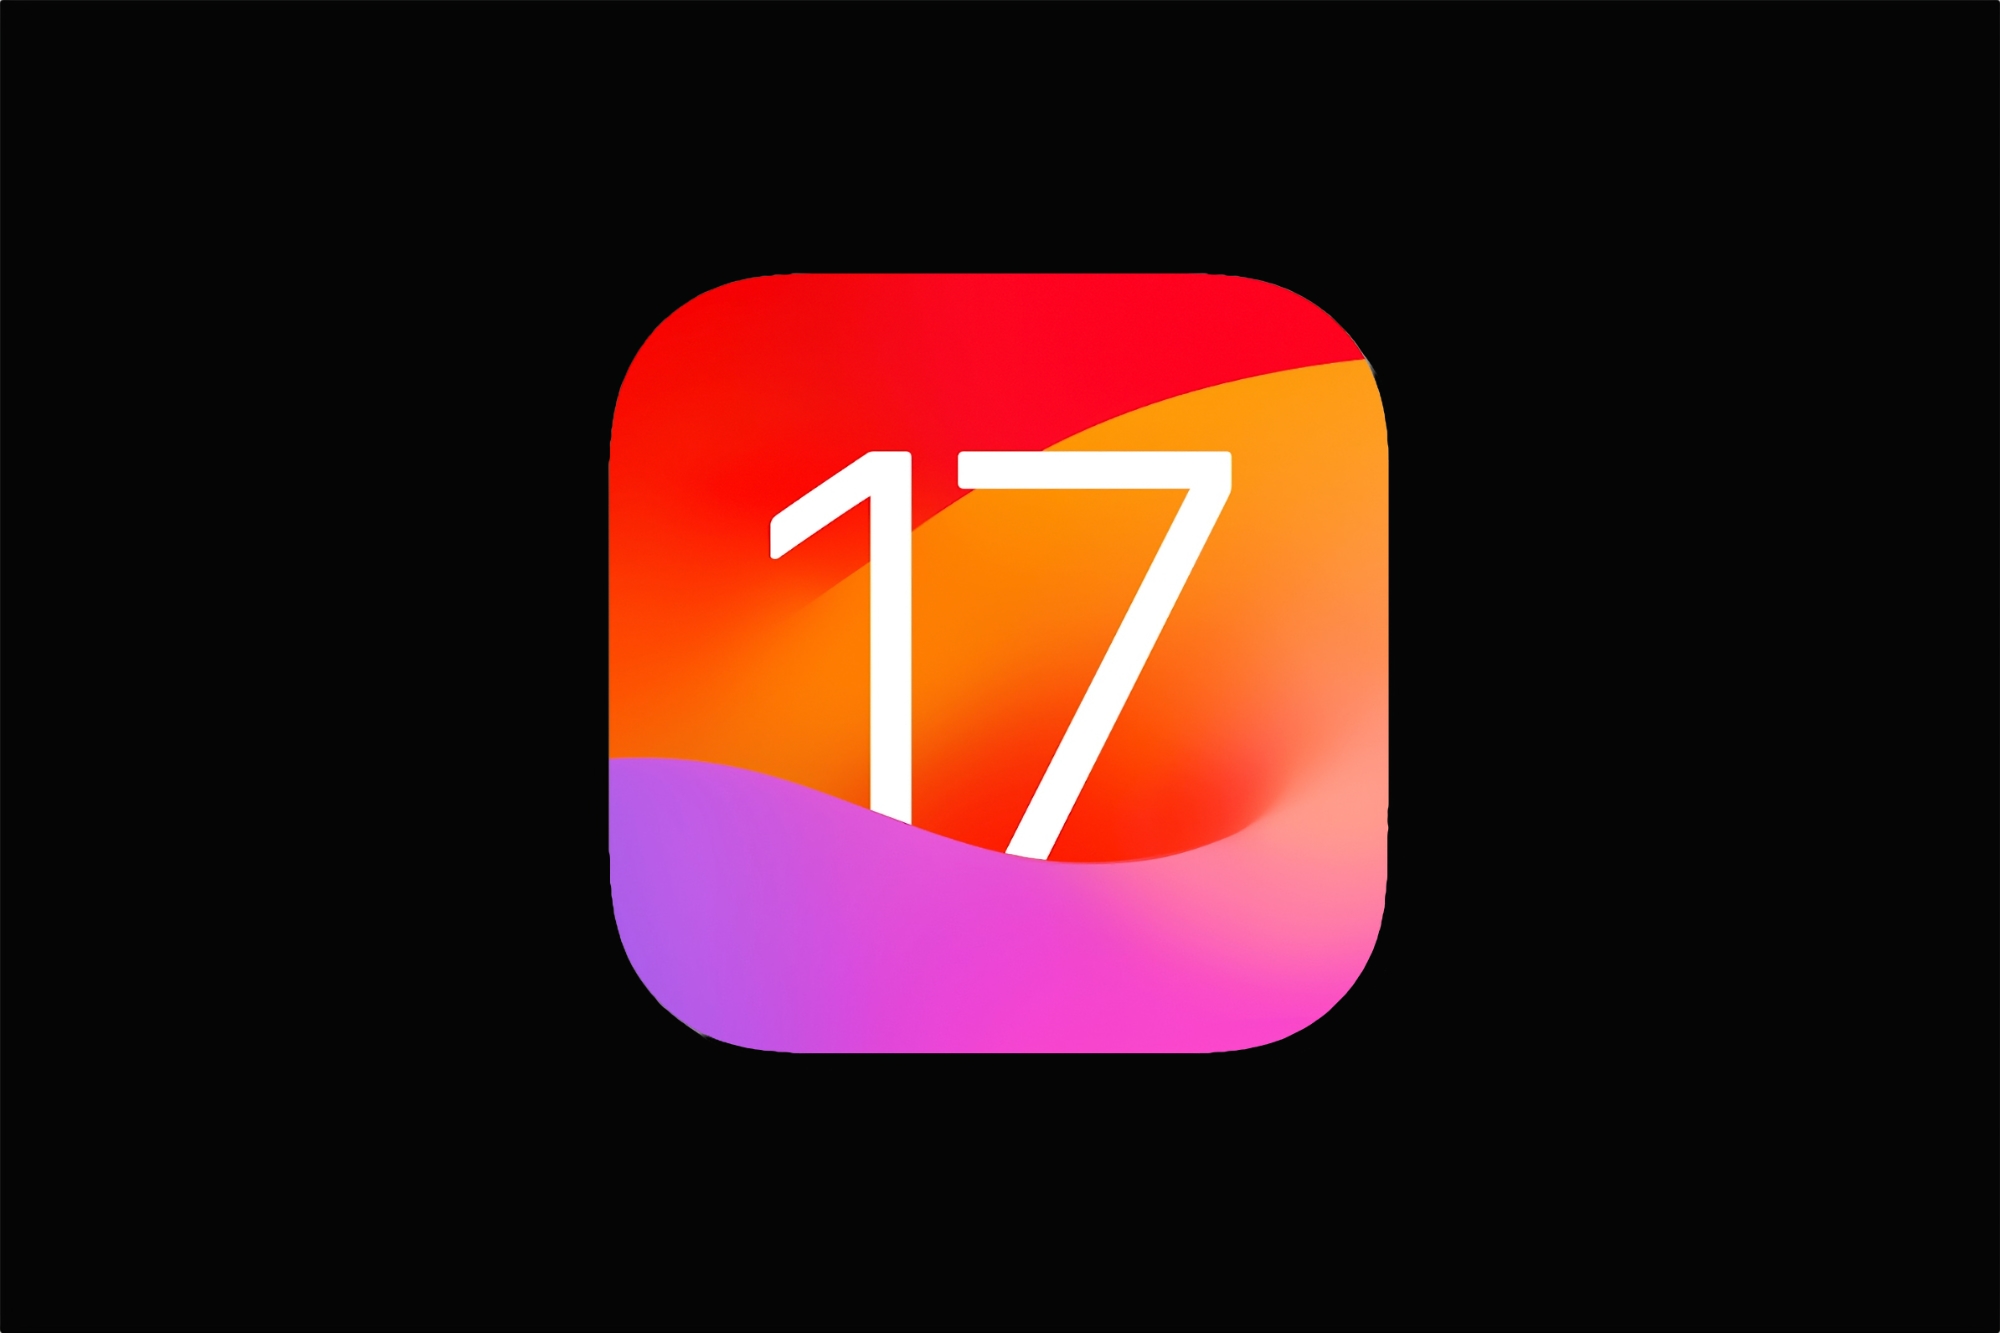 Apple випустила перші бета-версії iOS 17 та iPadOS 17